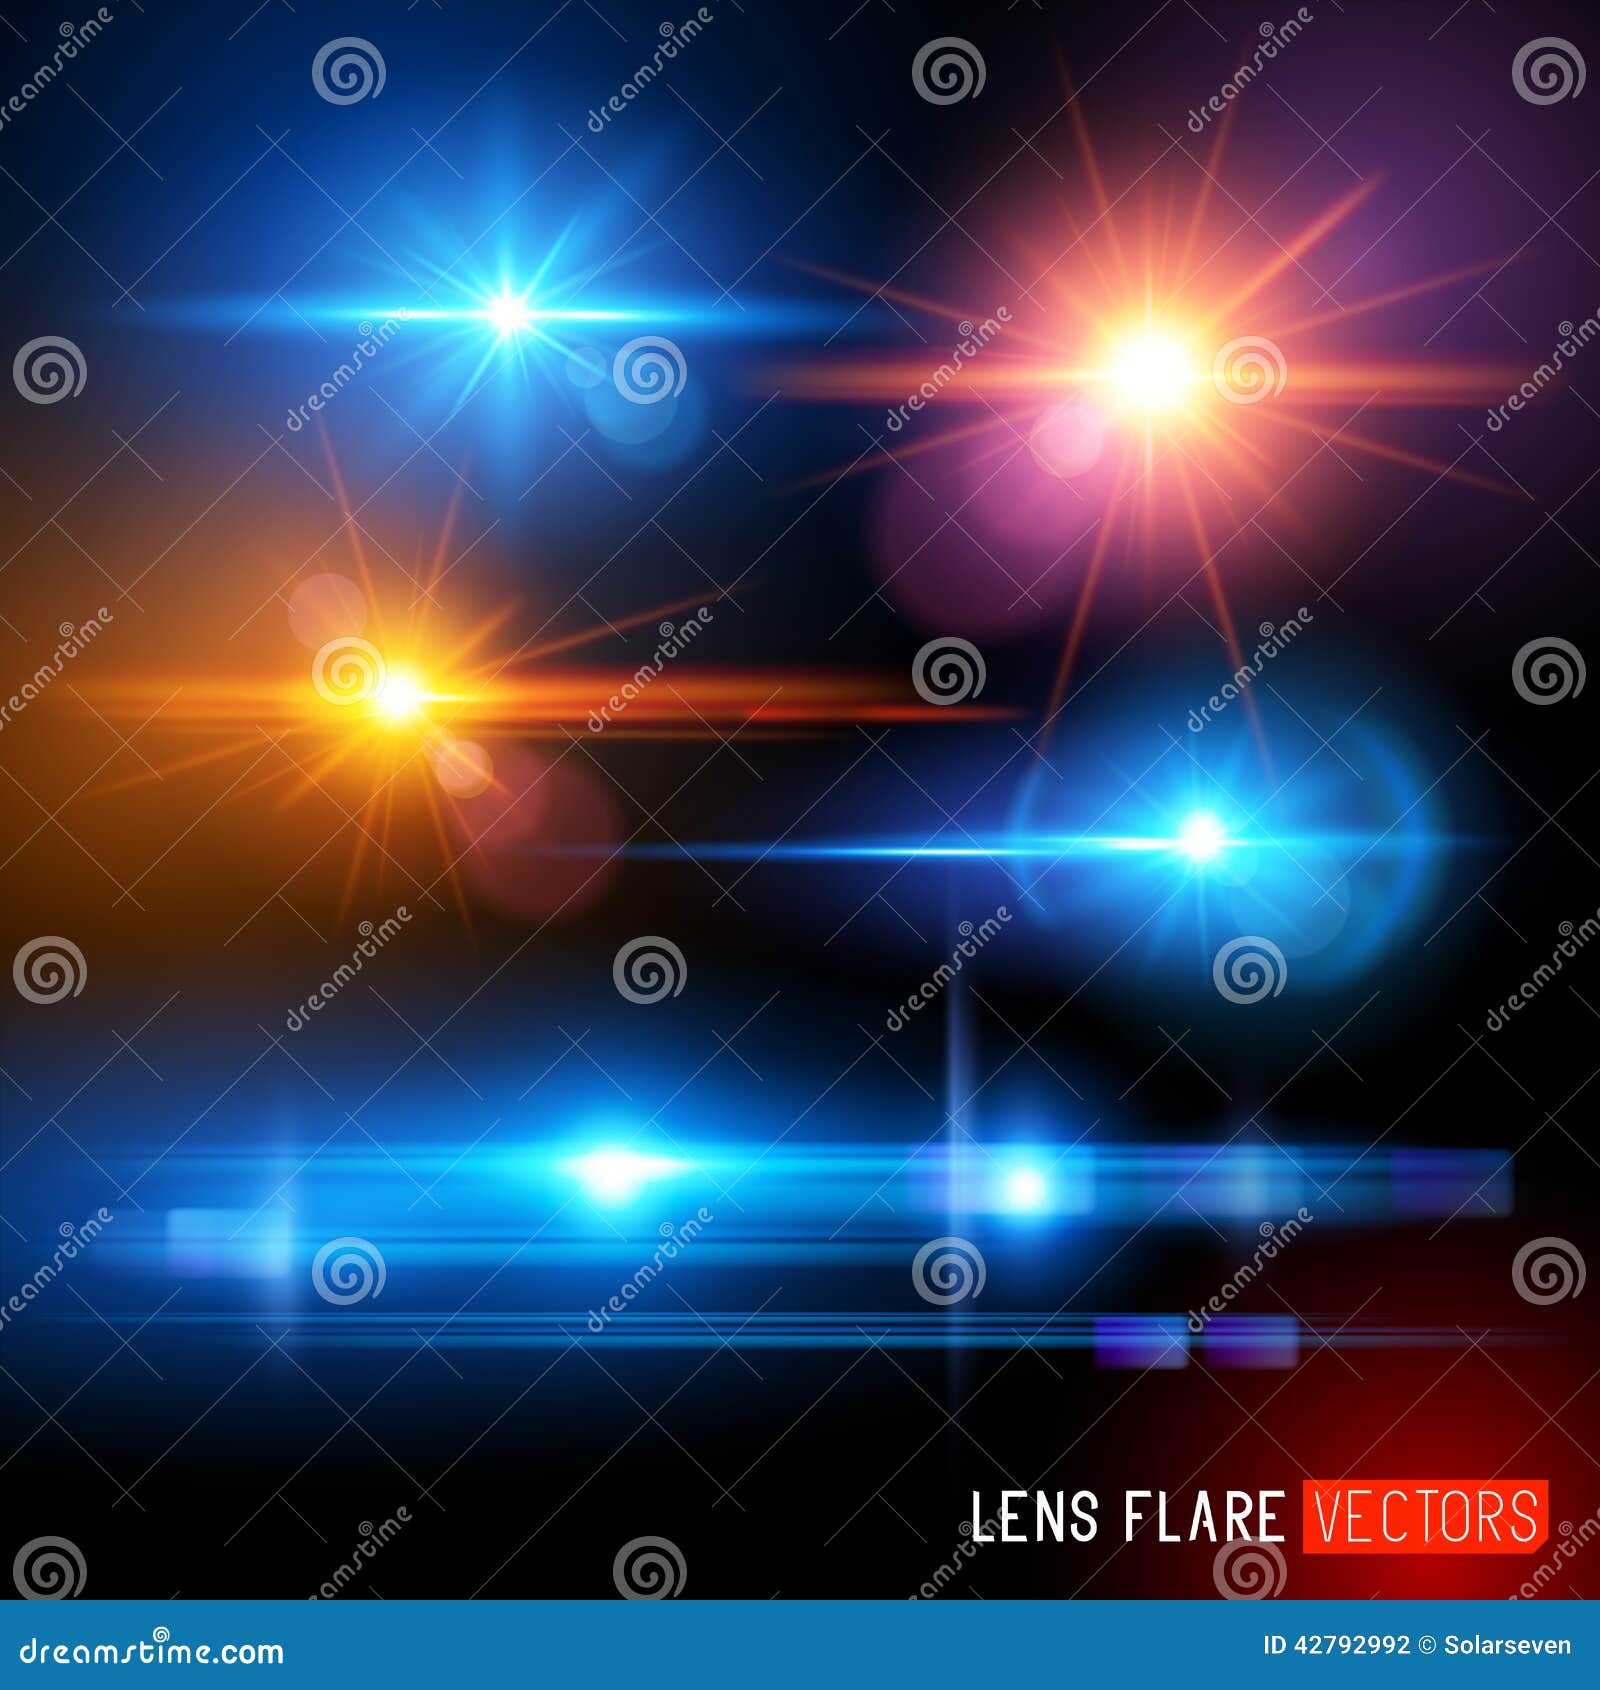  lens flare set